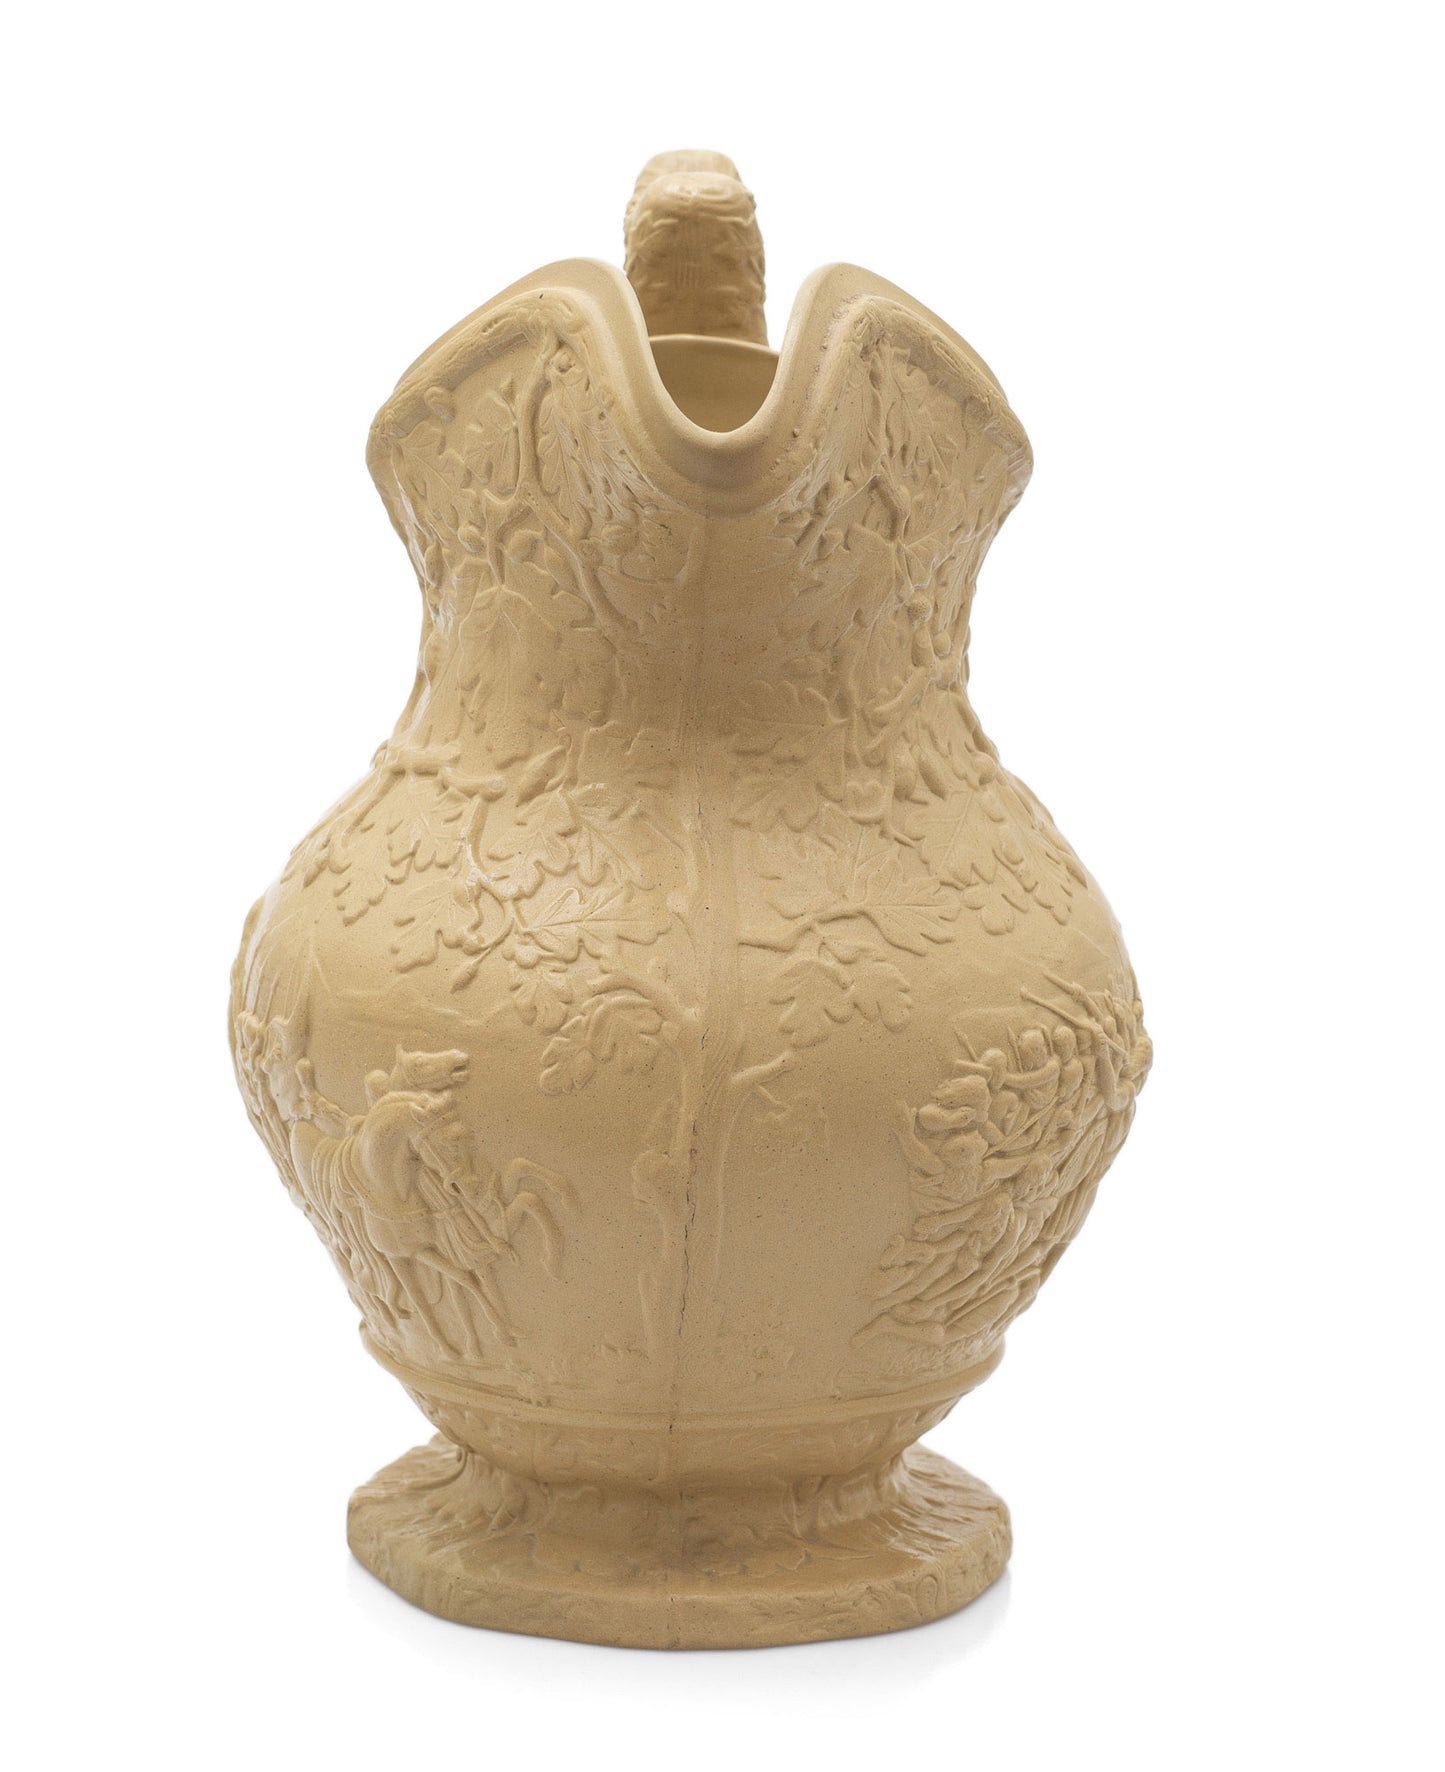 Charles Meigh Antique Julius Caesar & Boudicca Moulded Stoneware Jug c1839 (Code 2432)